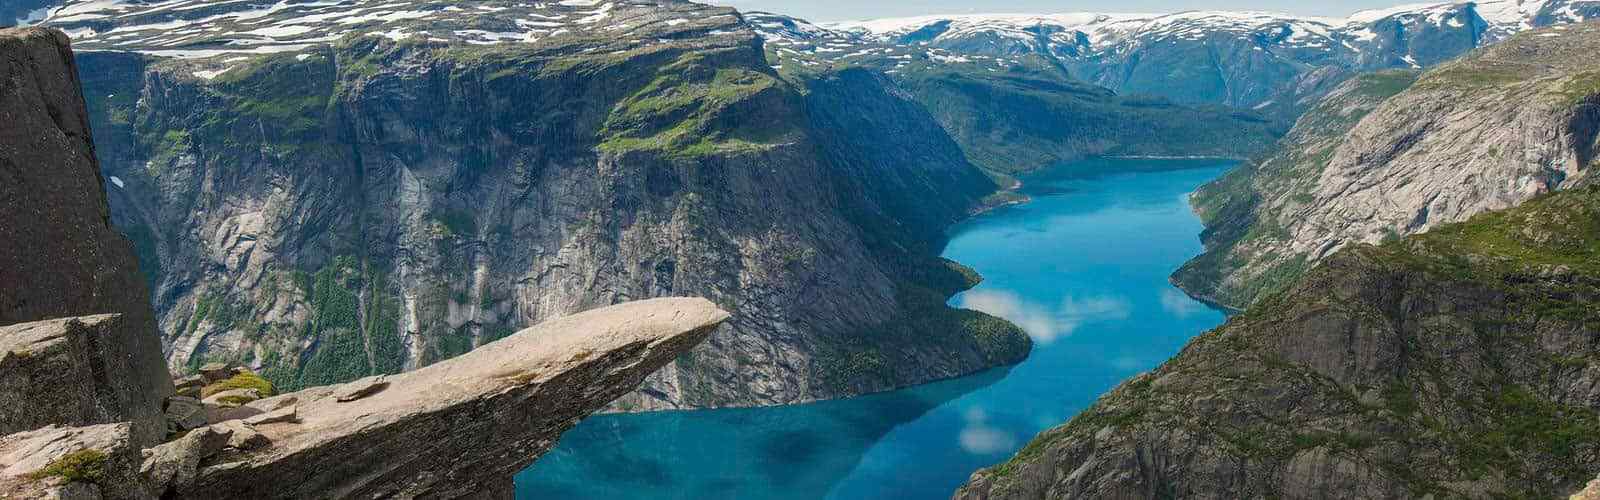 Grand Tour in moto in Norvegia tra fiordi e curve mozzafiato